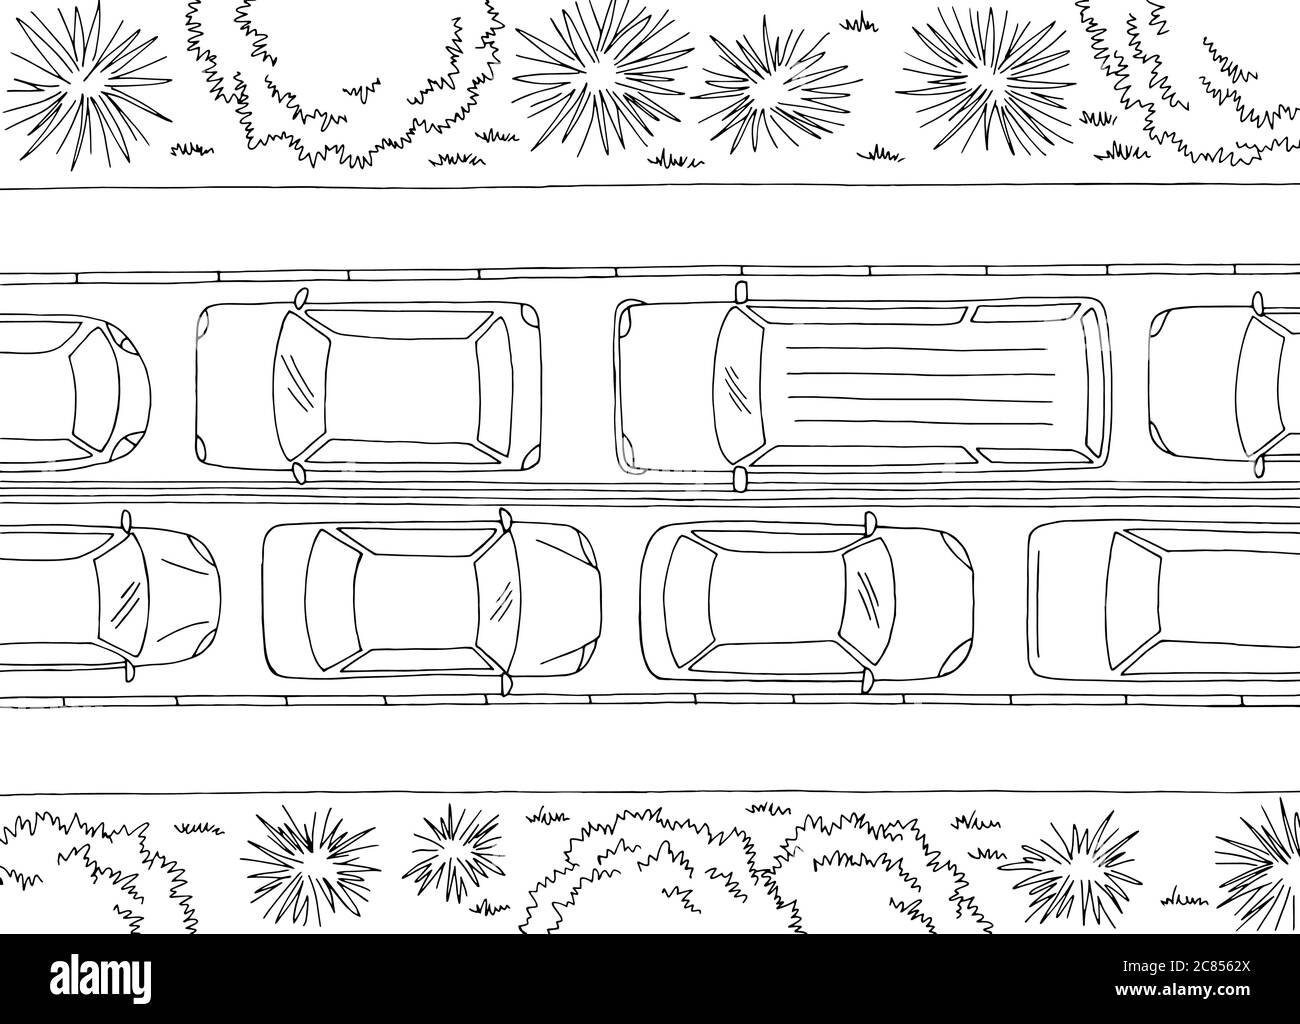 Embouteillage route graphique noir blanc esquisse vue aérienne paysage illustration vecteur Illustration de Vecteur